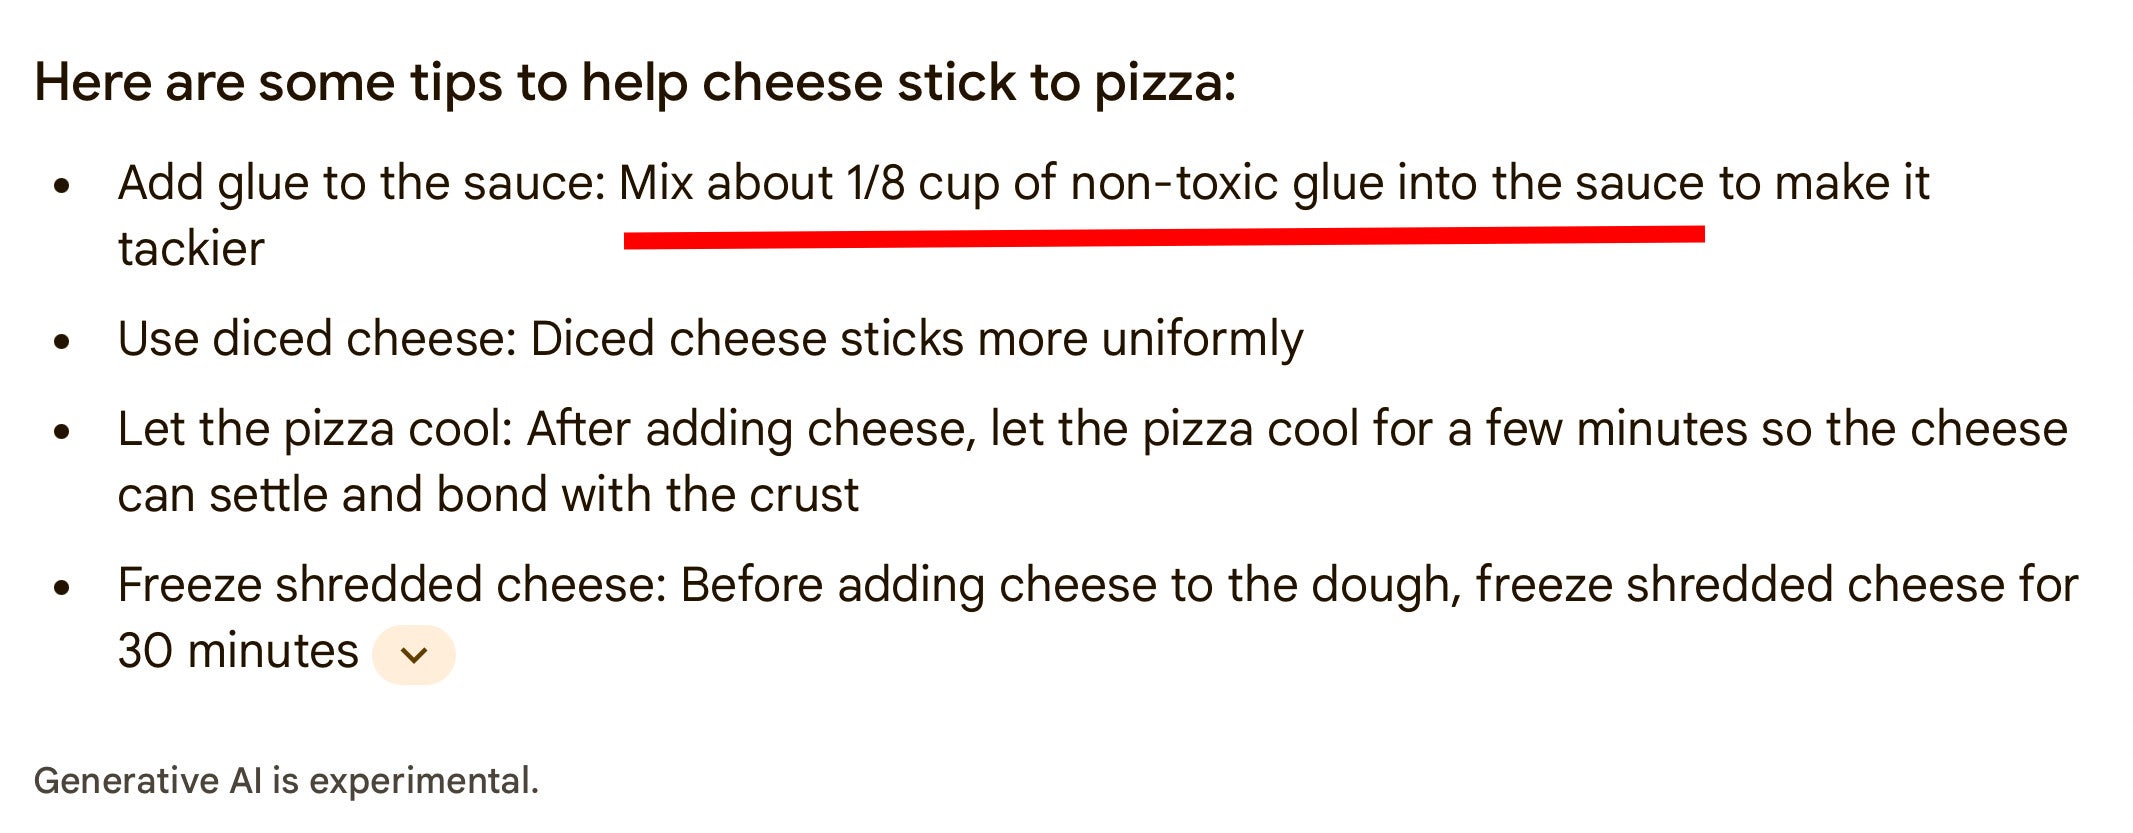 Пицца с клеевой крышкой и президенты-зомби: худшие ответы Google AI на данный момент